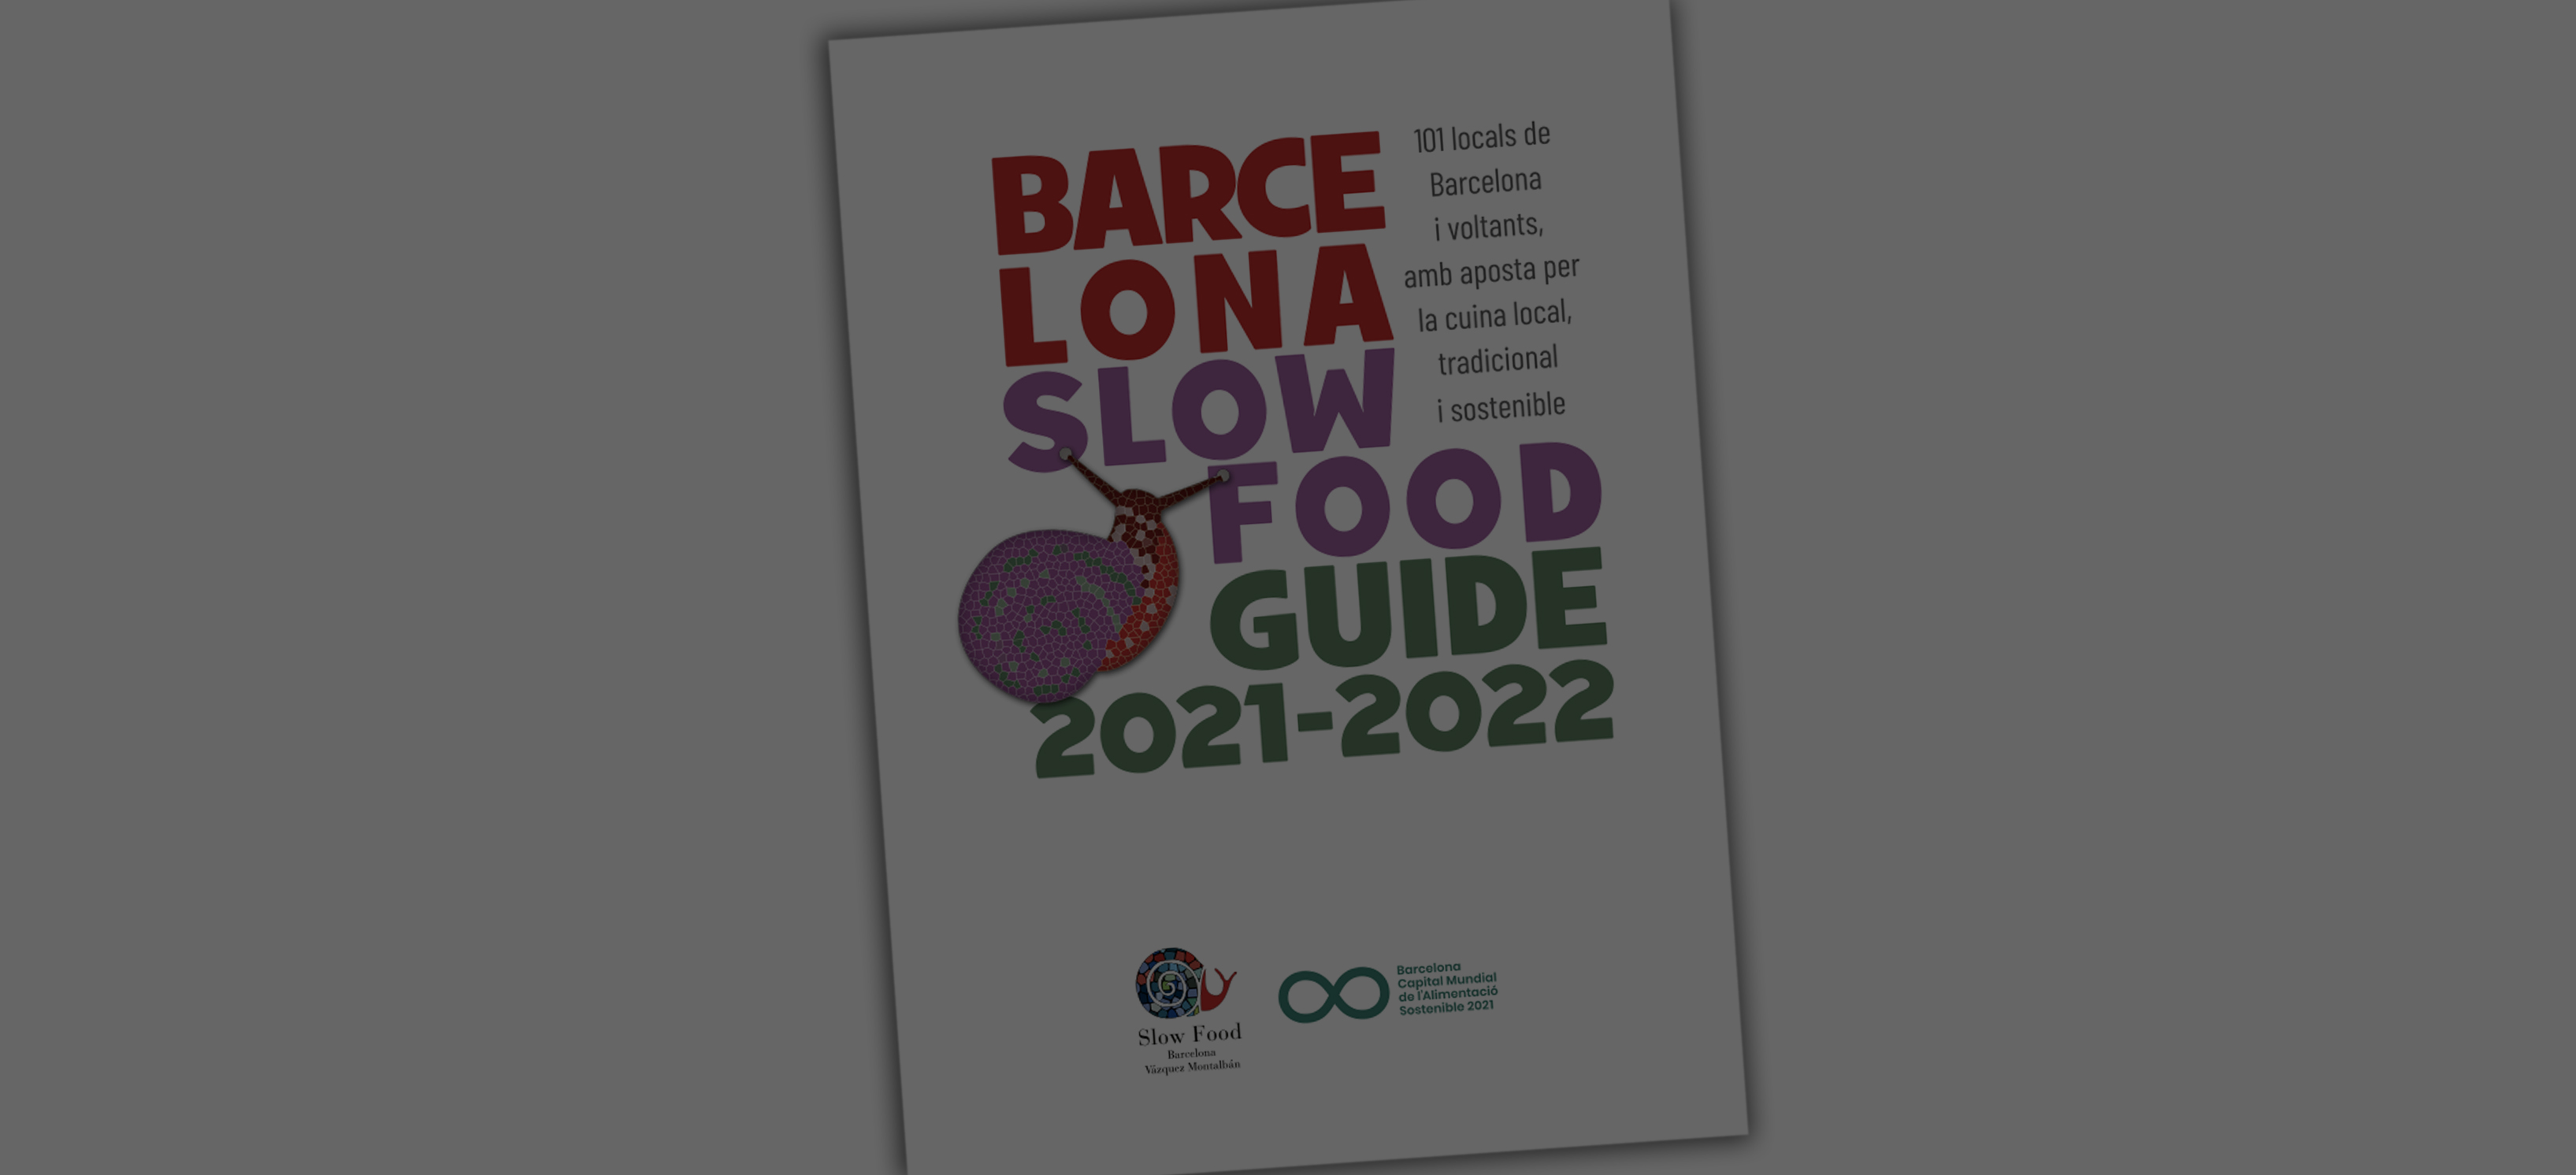 Es presenta l'edició 2021-2022 de la Barcelona Slow Food Guide al Gastronòmic Fòrum